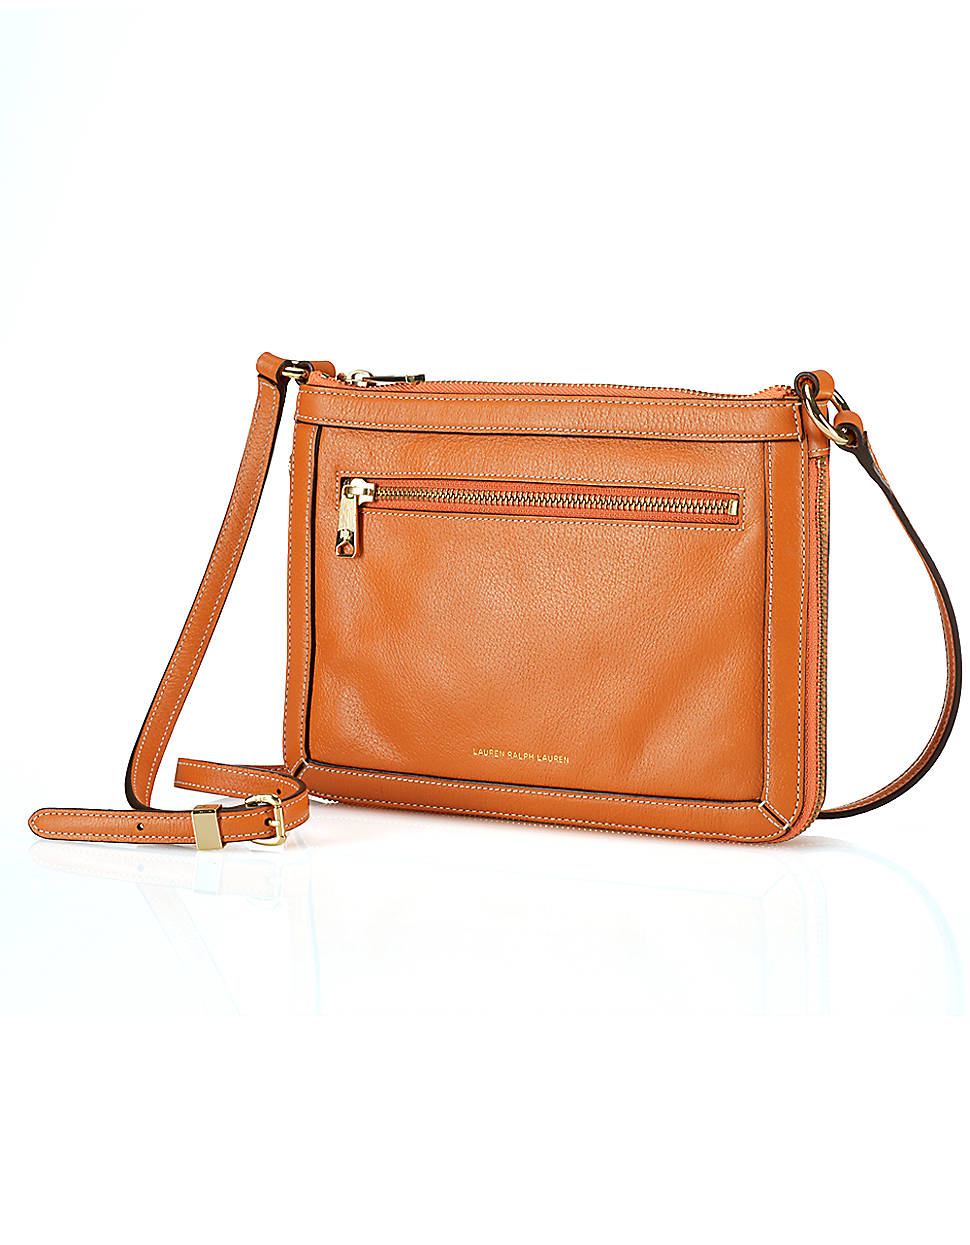 Lyst - Lauren By Ralph Lauren Thurlow Flat Leather Crossbody Bag in Orange